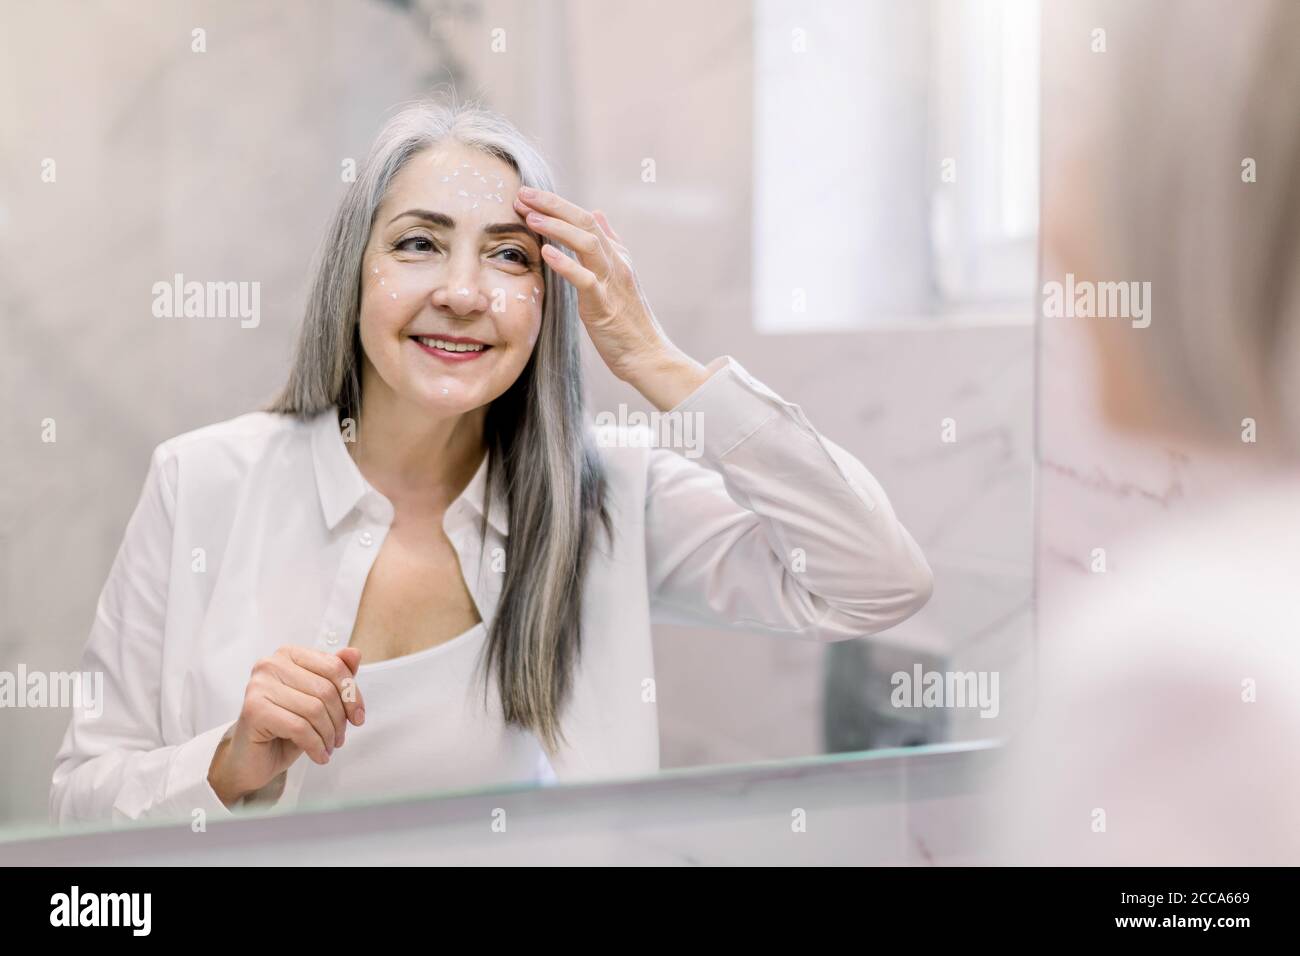 Jolie femme âgée avec de longs cheveux gris, portant une chemise blanche,  regardant son visage dans le miroir de salle de bains, et appliquant de la  crème anti-rides ou cosmétique Photo Stock -